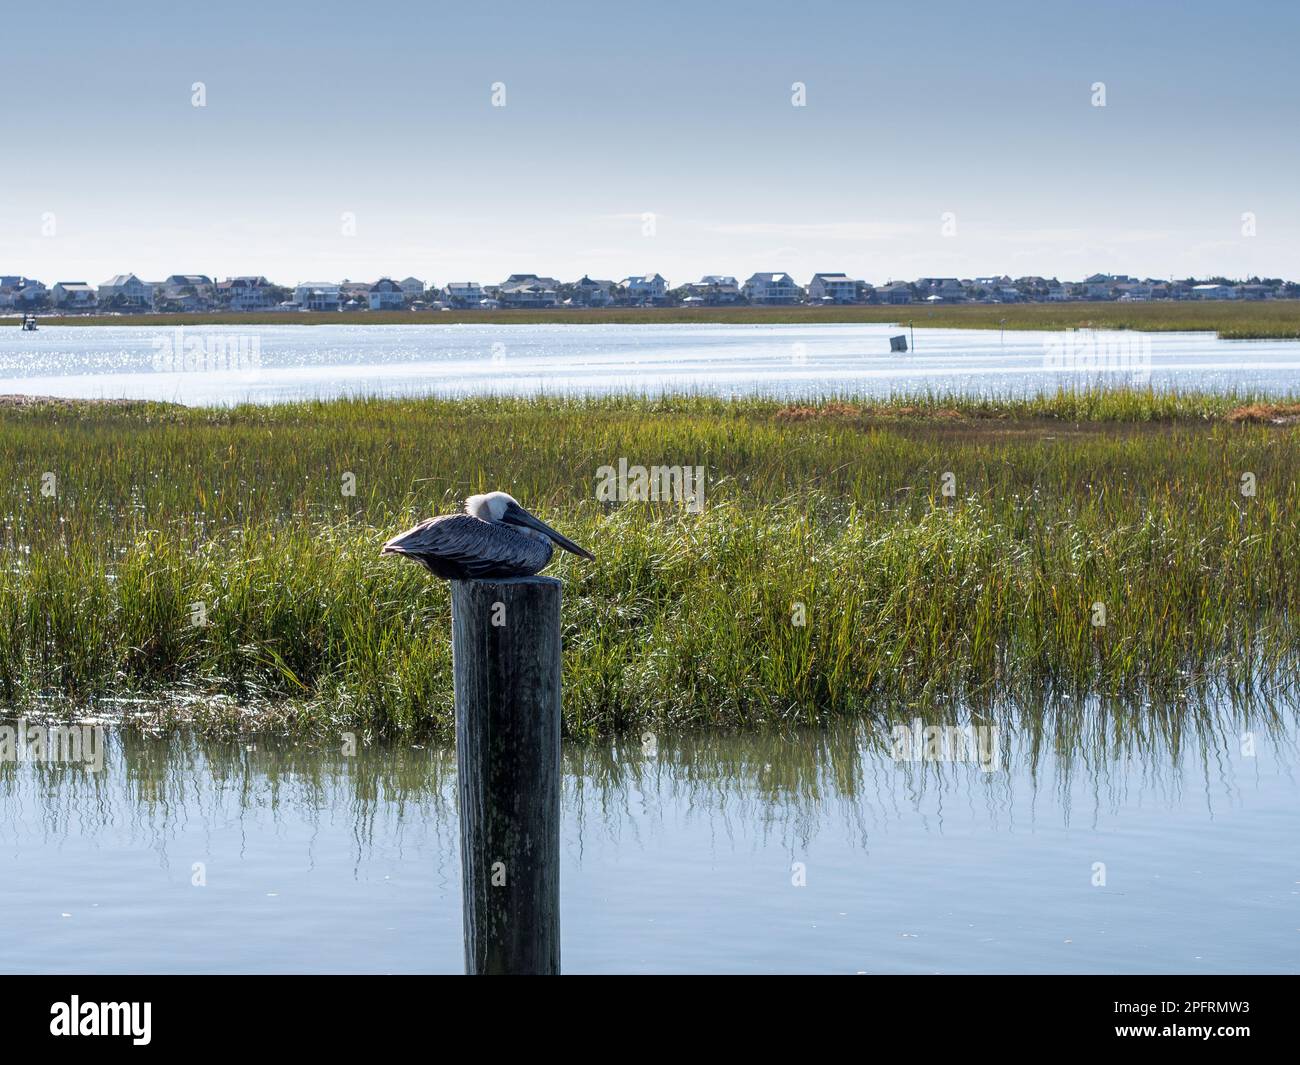 Am Murrell's Inlet südlich von Myrtle Beach in South Carolina, USA, liegt ein Pelikan auf einem Stab. Mit dem Hintergrund von Wasser und Stockfoto